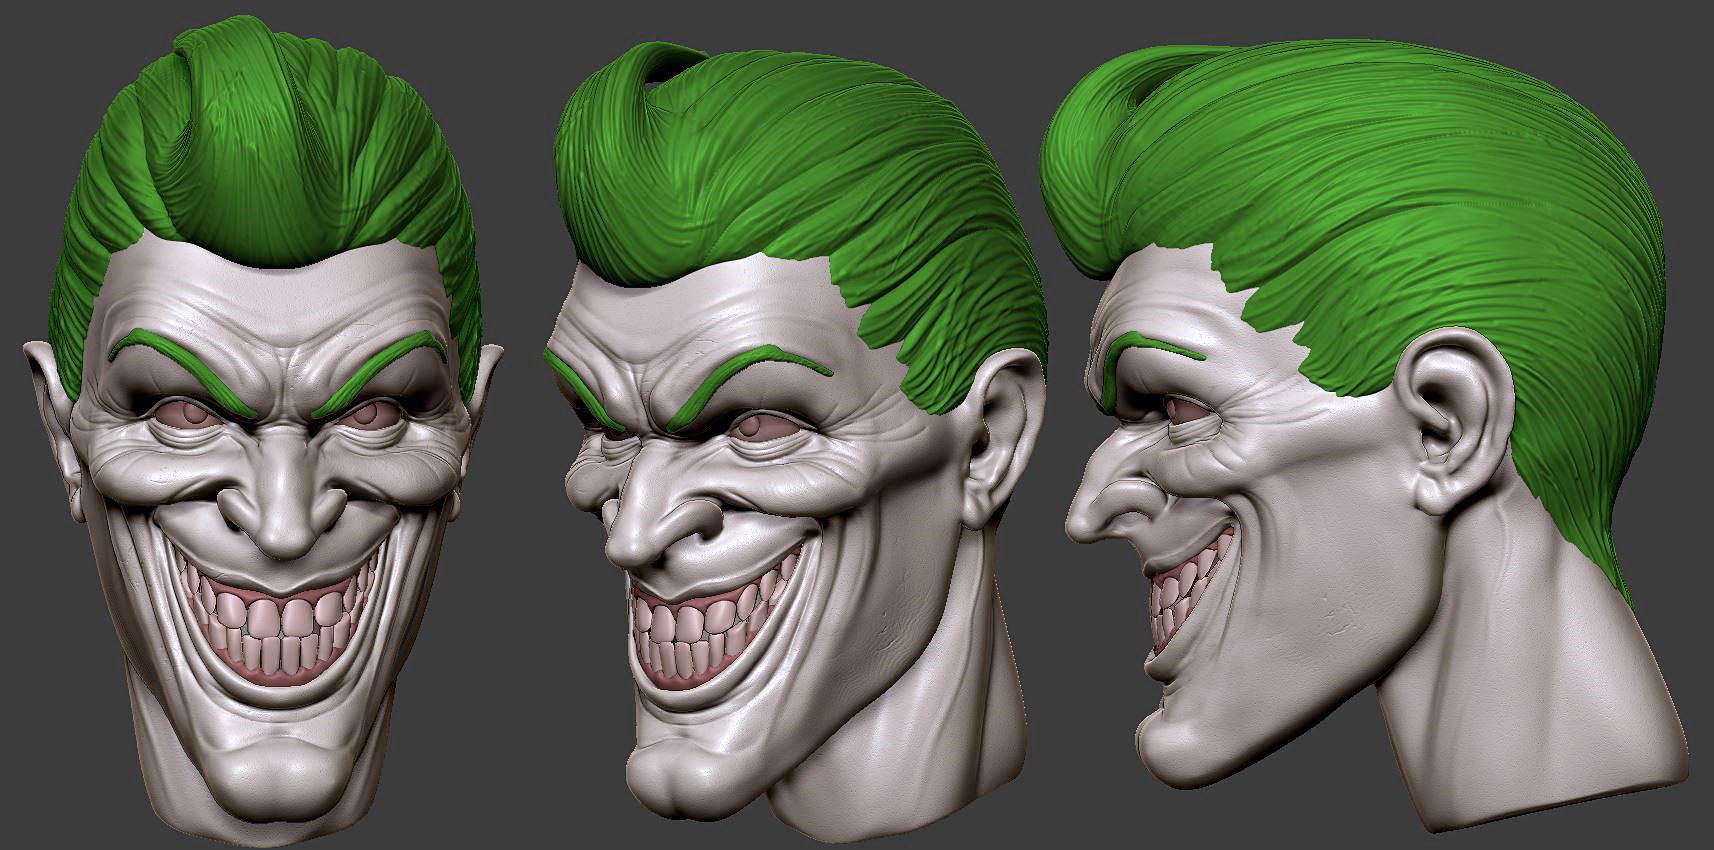 ArtStation - Attempt at a Joker's face concept.